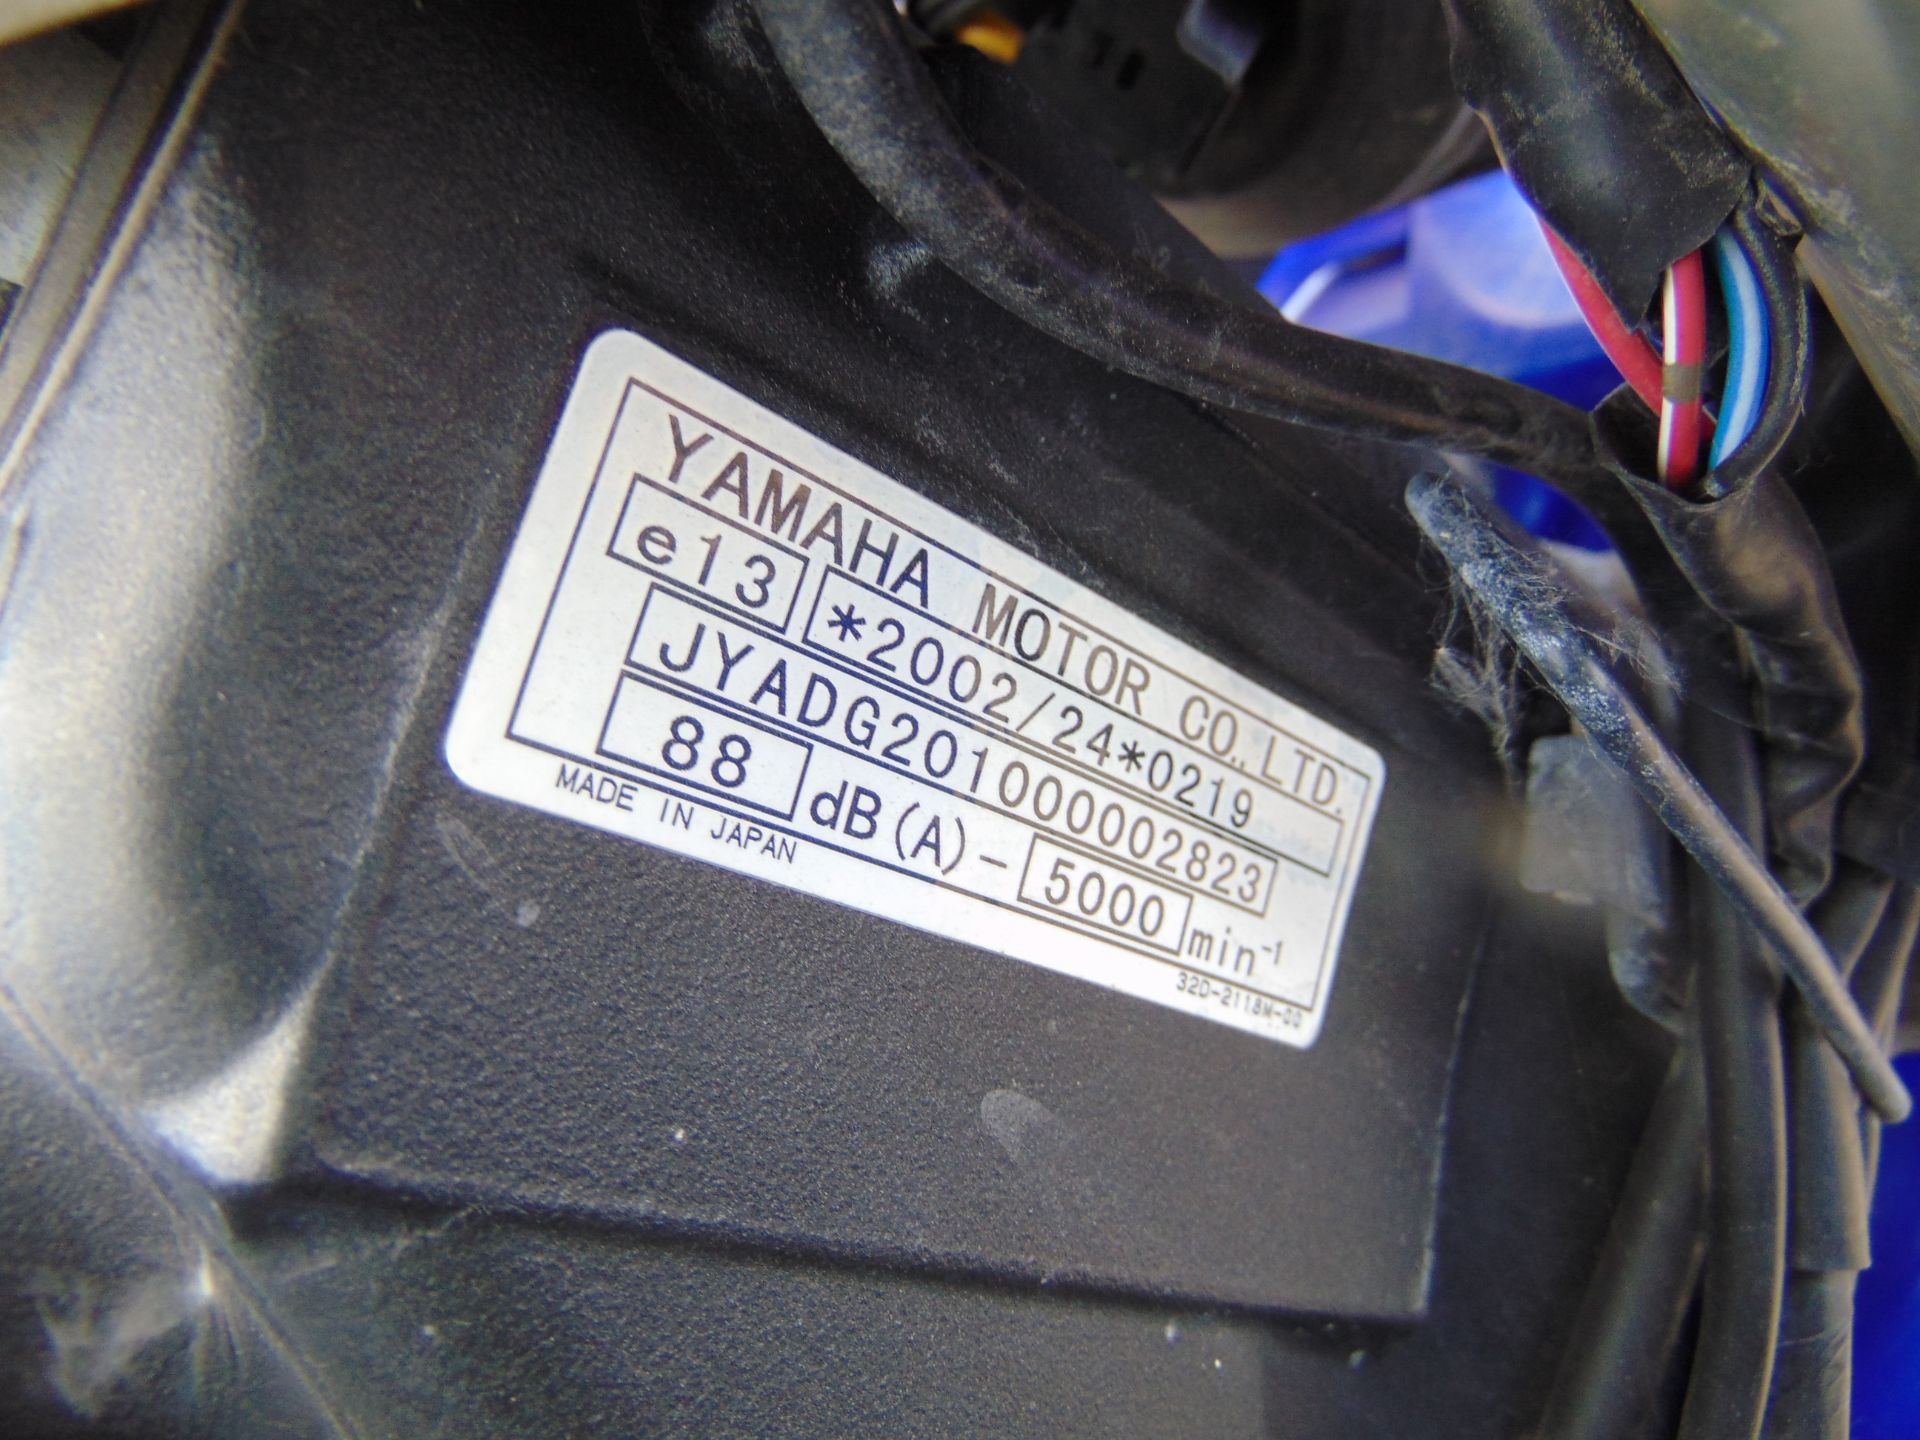 2010 Yamaha WR250R Enduro Motorbike - Image 17 of 18